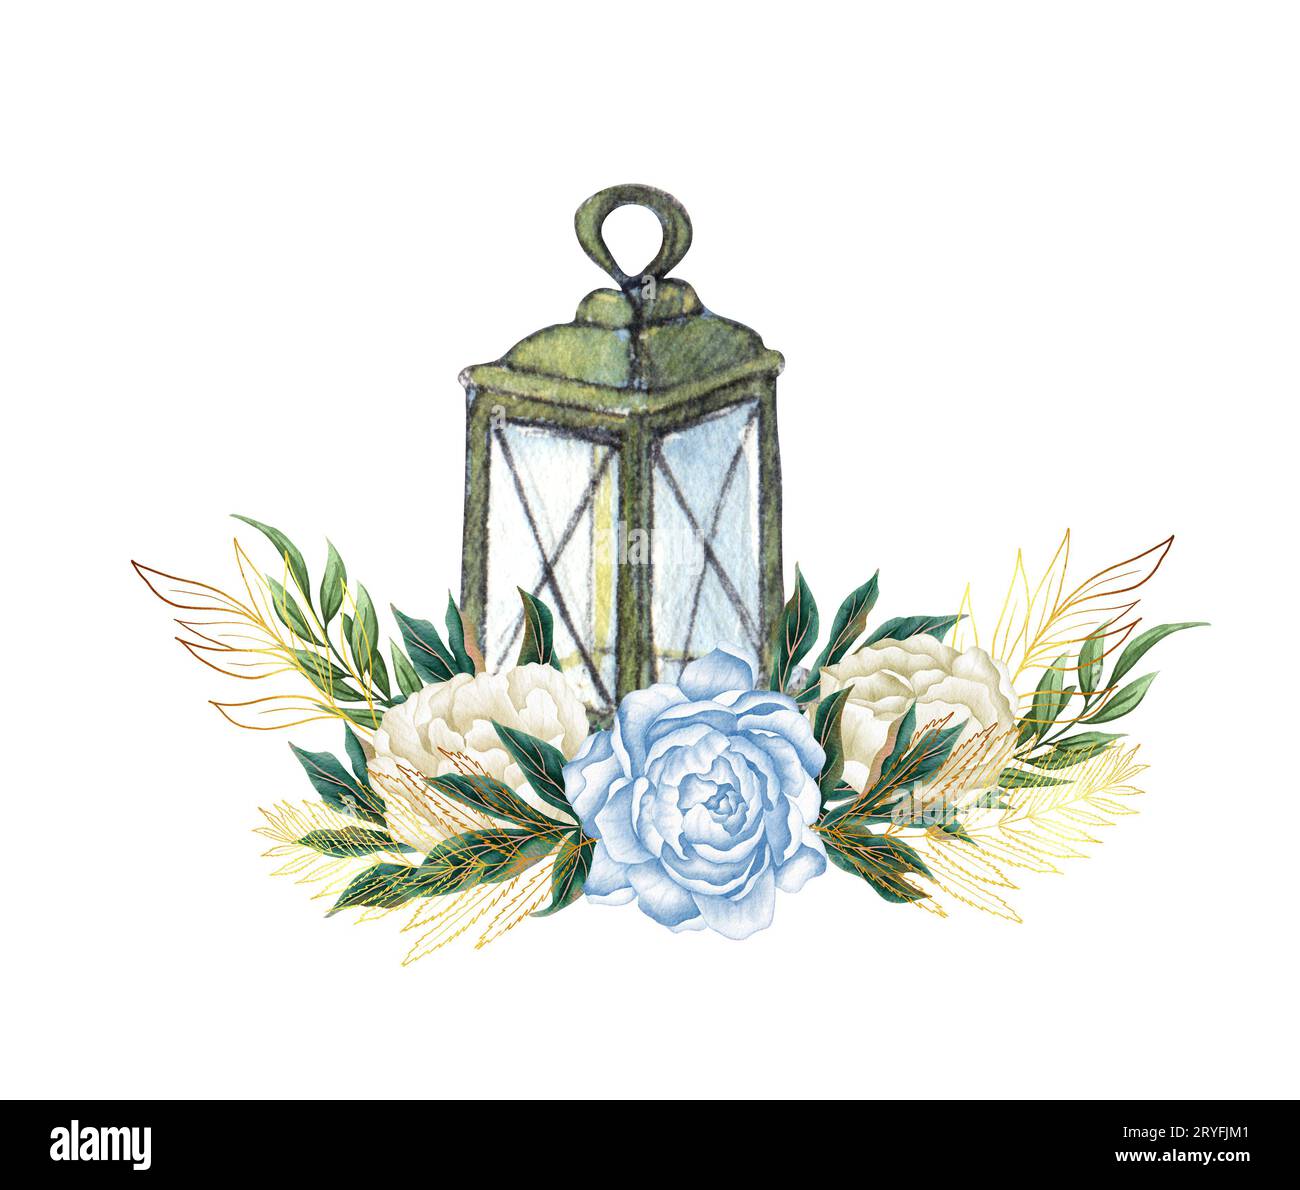 Aquarelle dessinée à la main nautique, marine, illustration florale avec lanterne et arrangement de bouquet de fleurs Banque D'Images